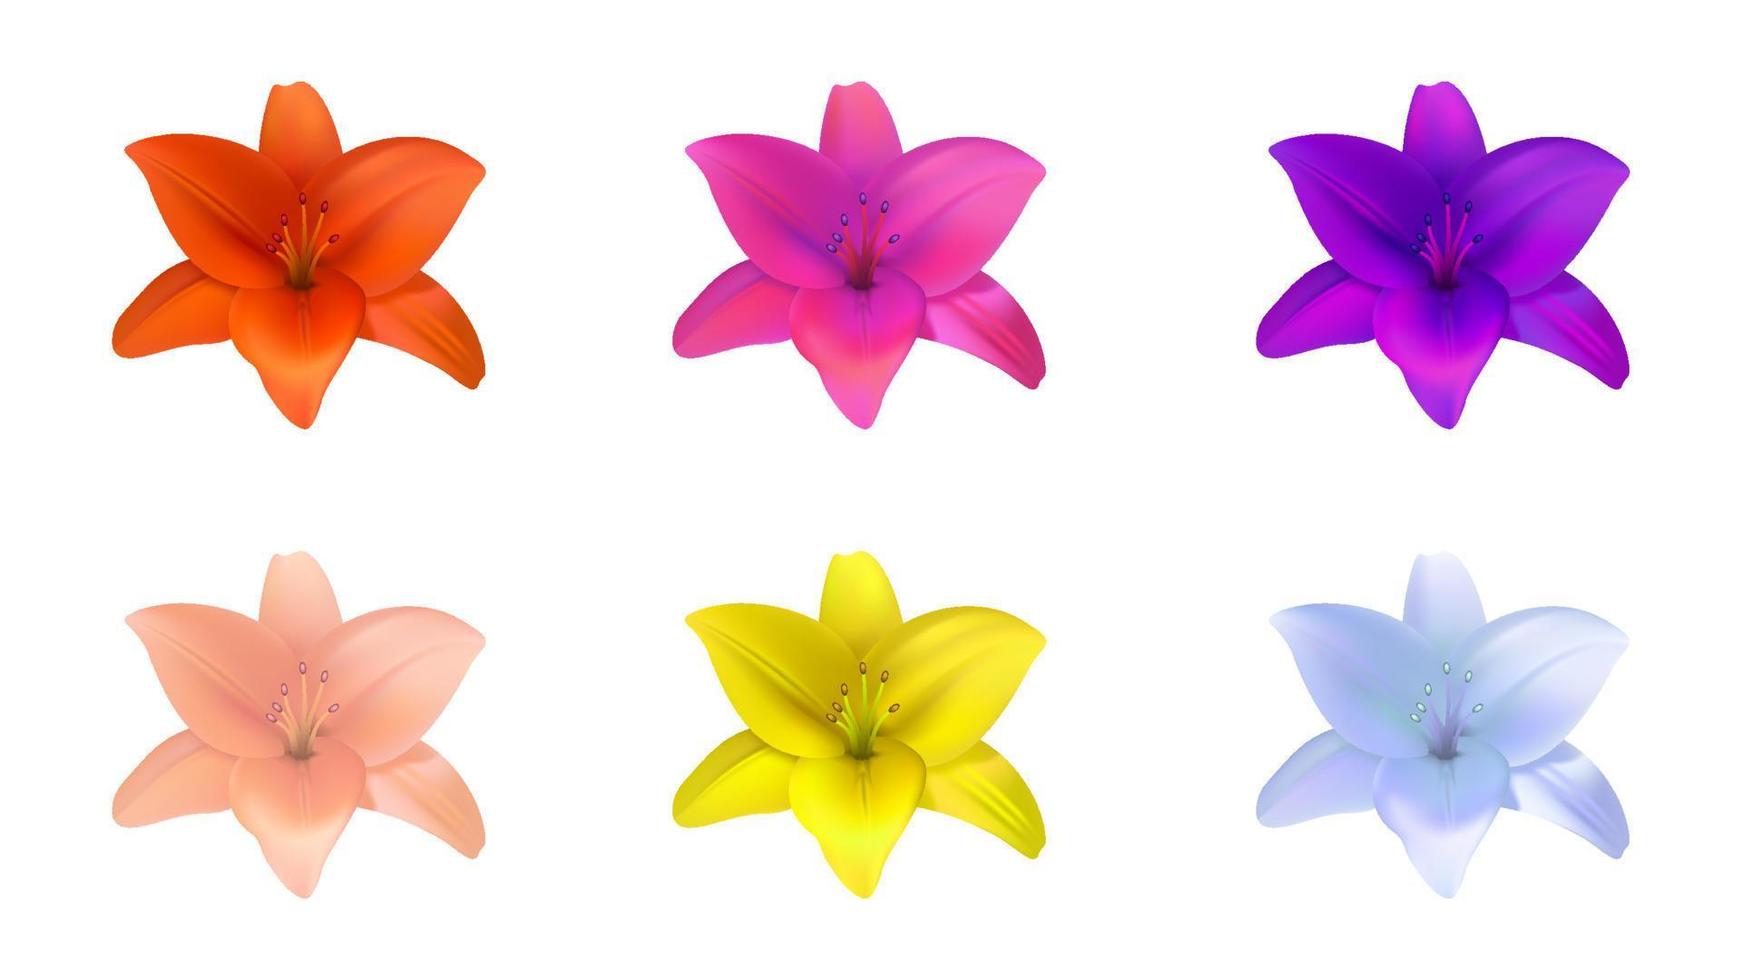 realistisches Lilienblumen-Vektorobjekt, das mit Verlaufsgitter erstellt wurde, buntes Lilienblumenobjekt auf weißem Hintergrund. vektor